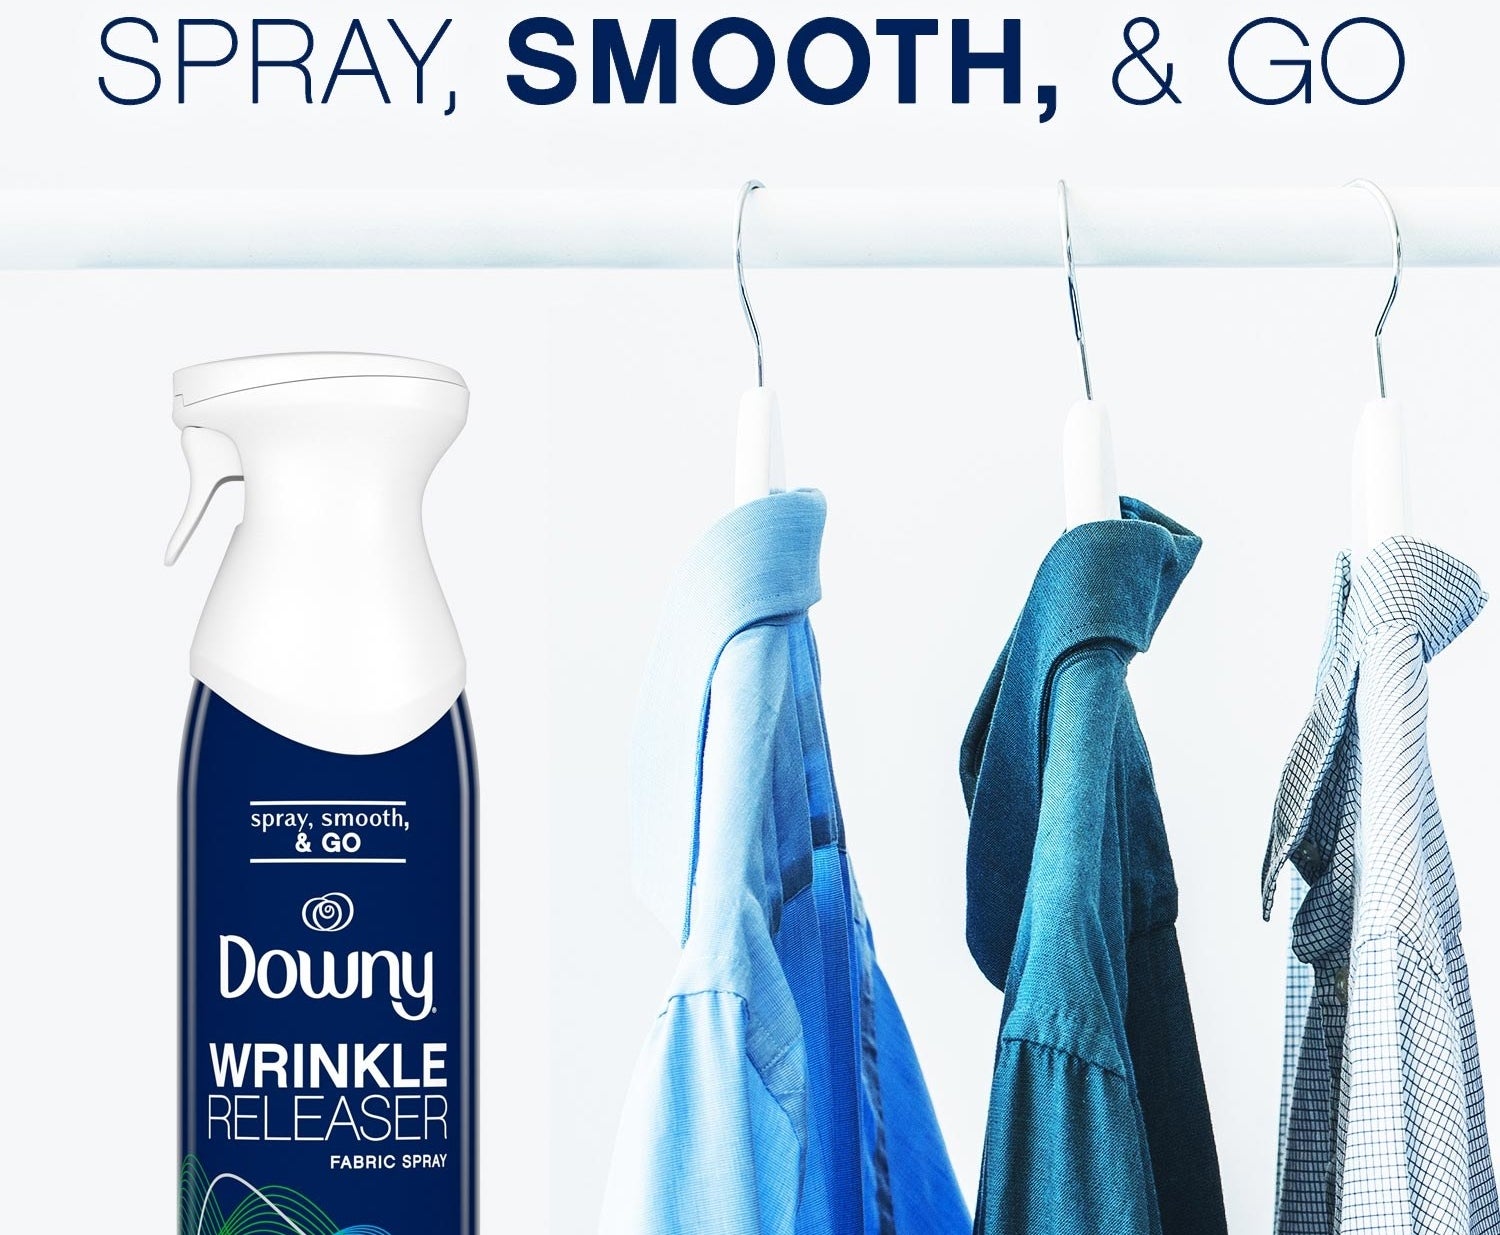 Bottle of Downy Wrinkle Releaser spray